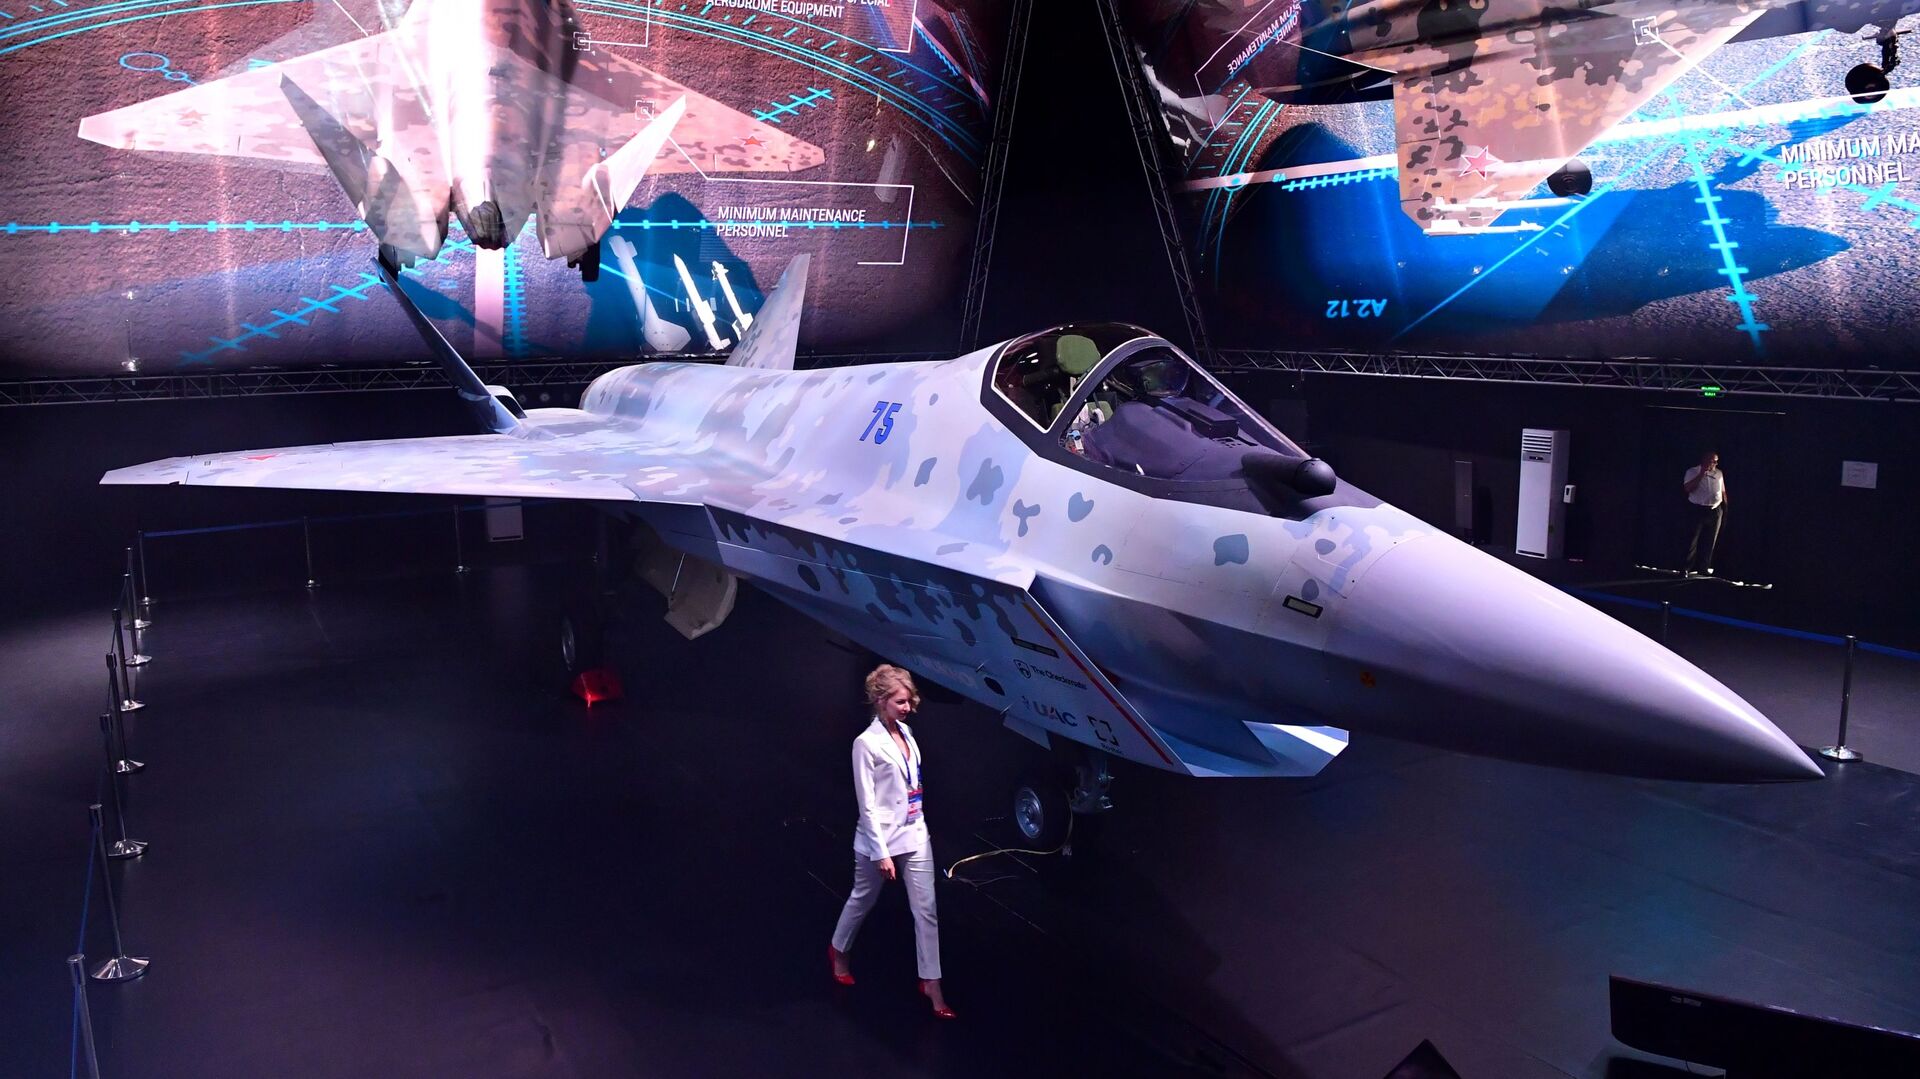 مقاتلة سوخوي تشيك ميت (كش ملك) في معرض الطيران والفضاء الدولي ماكس 2021 في جوكوفسكي، ضواحي موسكو، روسيا 20 يوليو 2021 - سبوتنيك عربي, 1920, 23.07.2021